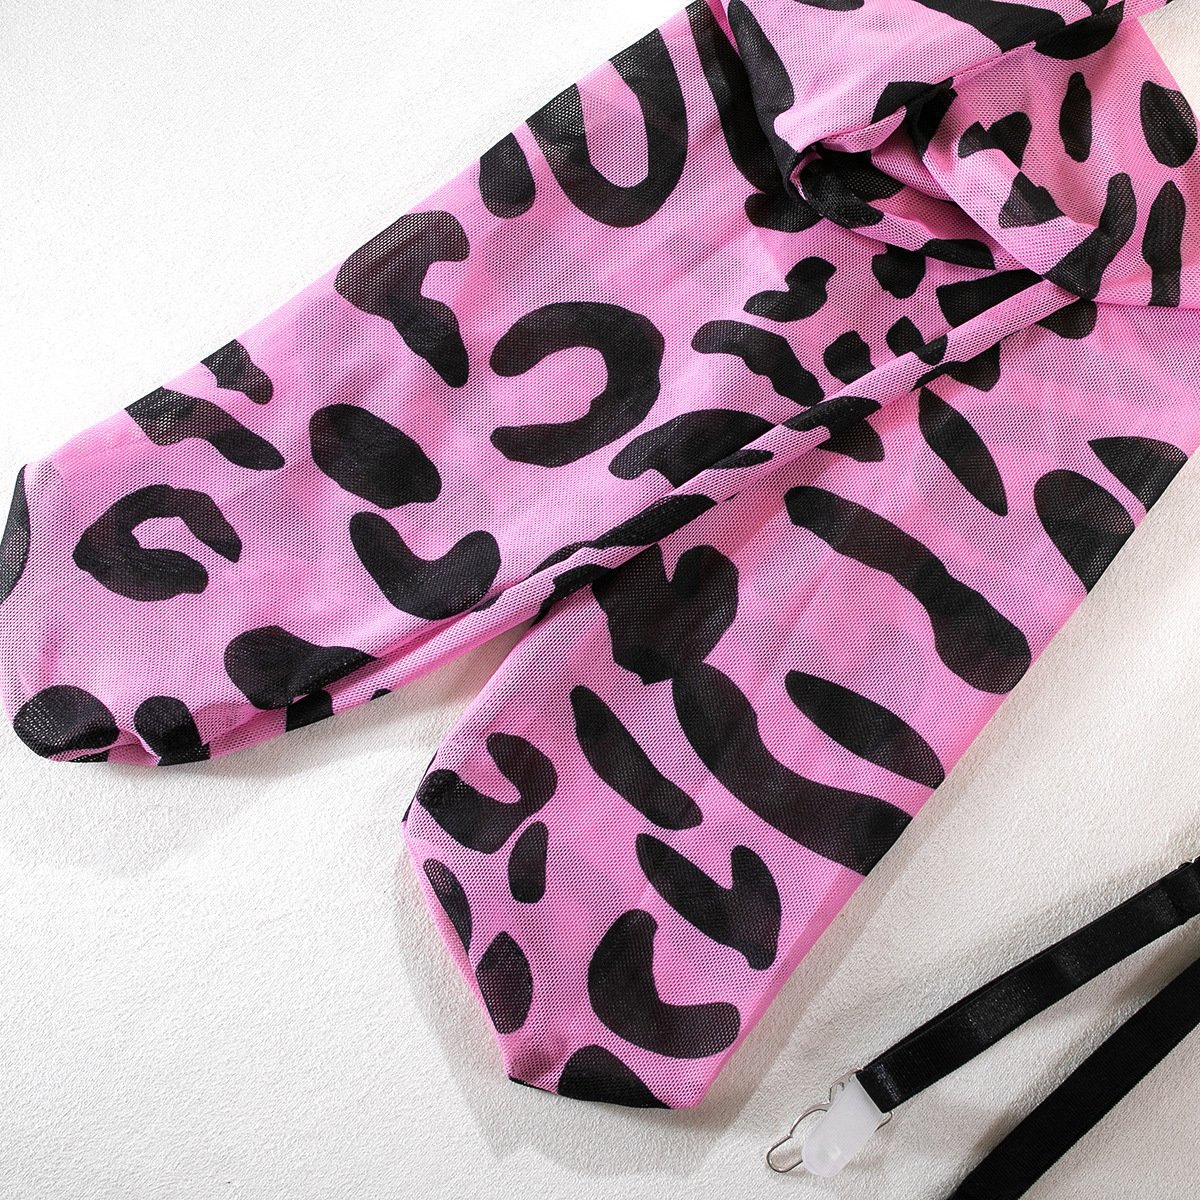 Leopard print gloves sheer mesh garter lingerie set